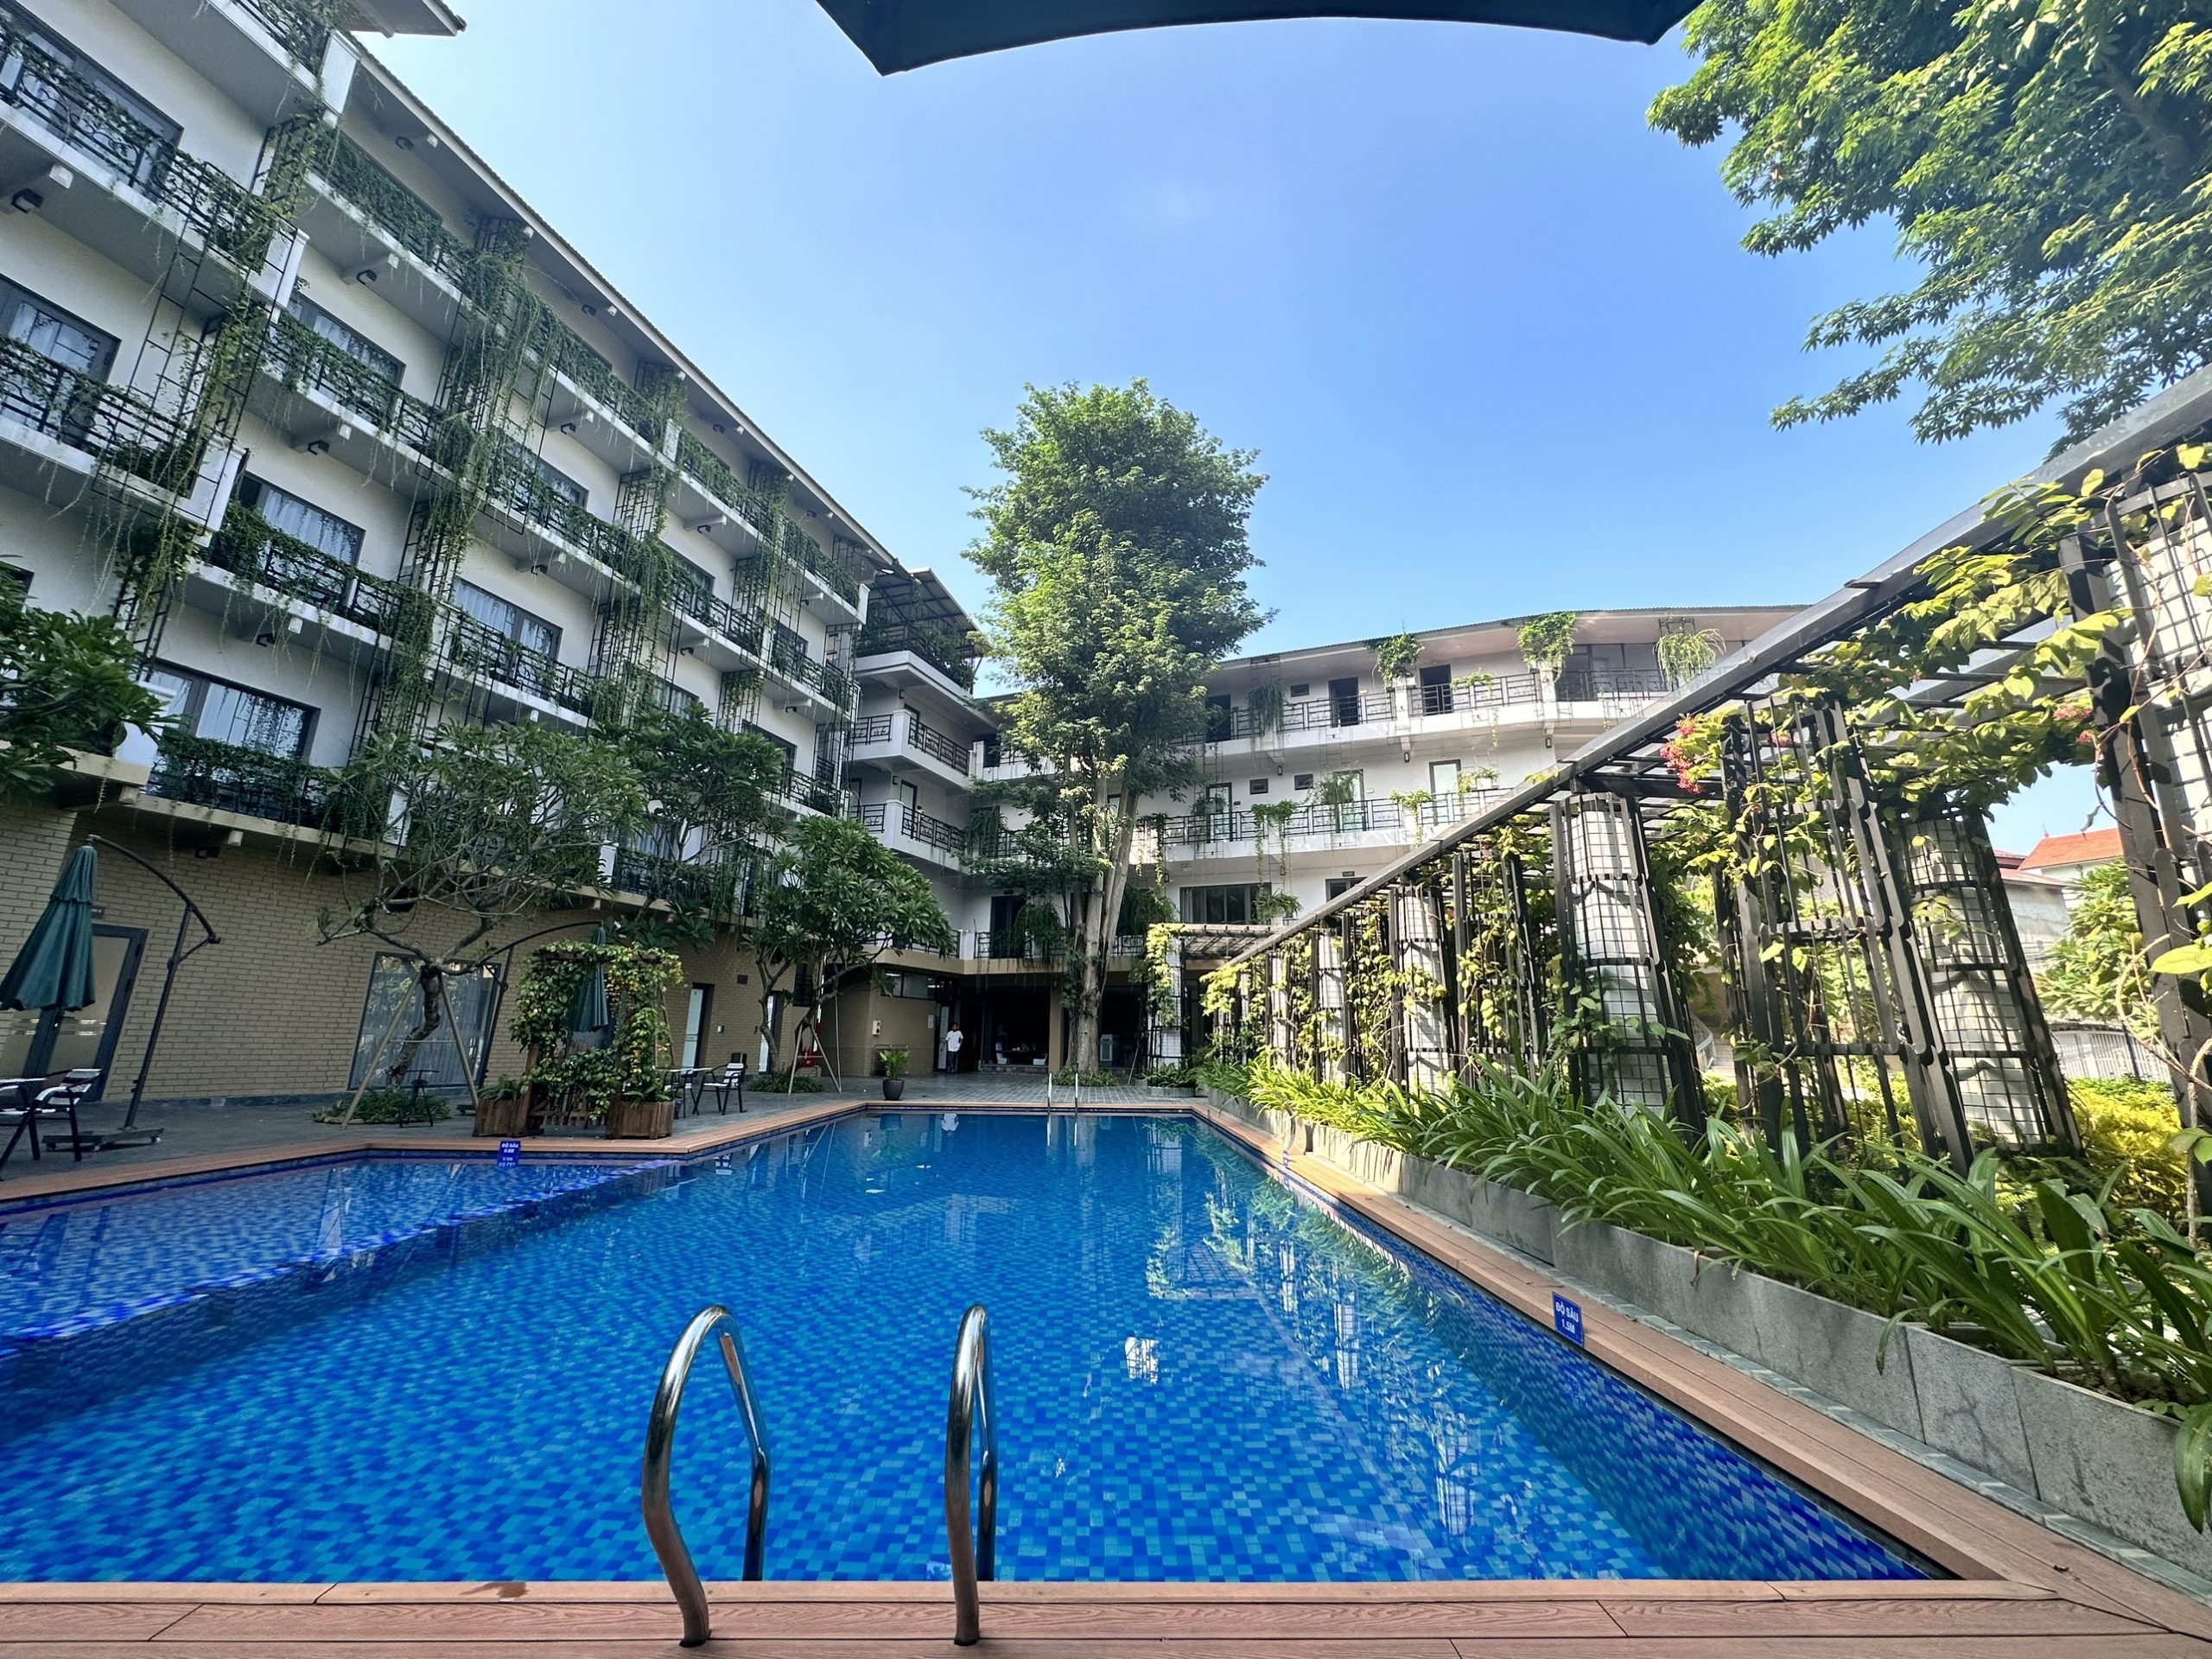 Bể bơi ngoài trời tại khách sạn nghỉ dưỡng Thái Nguyên X Hotel